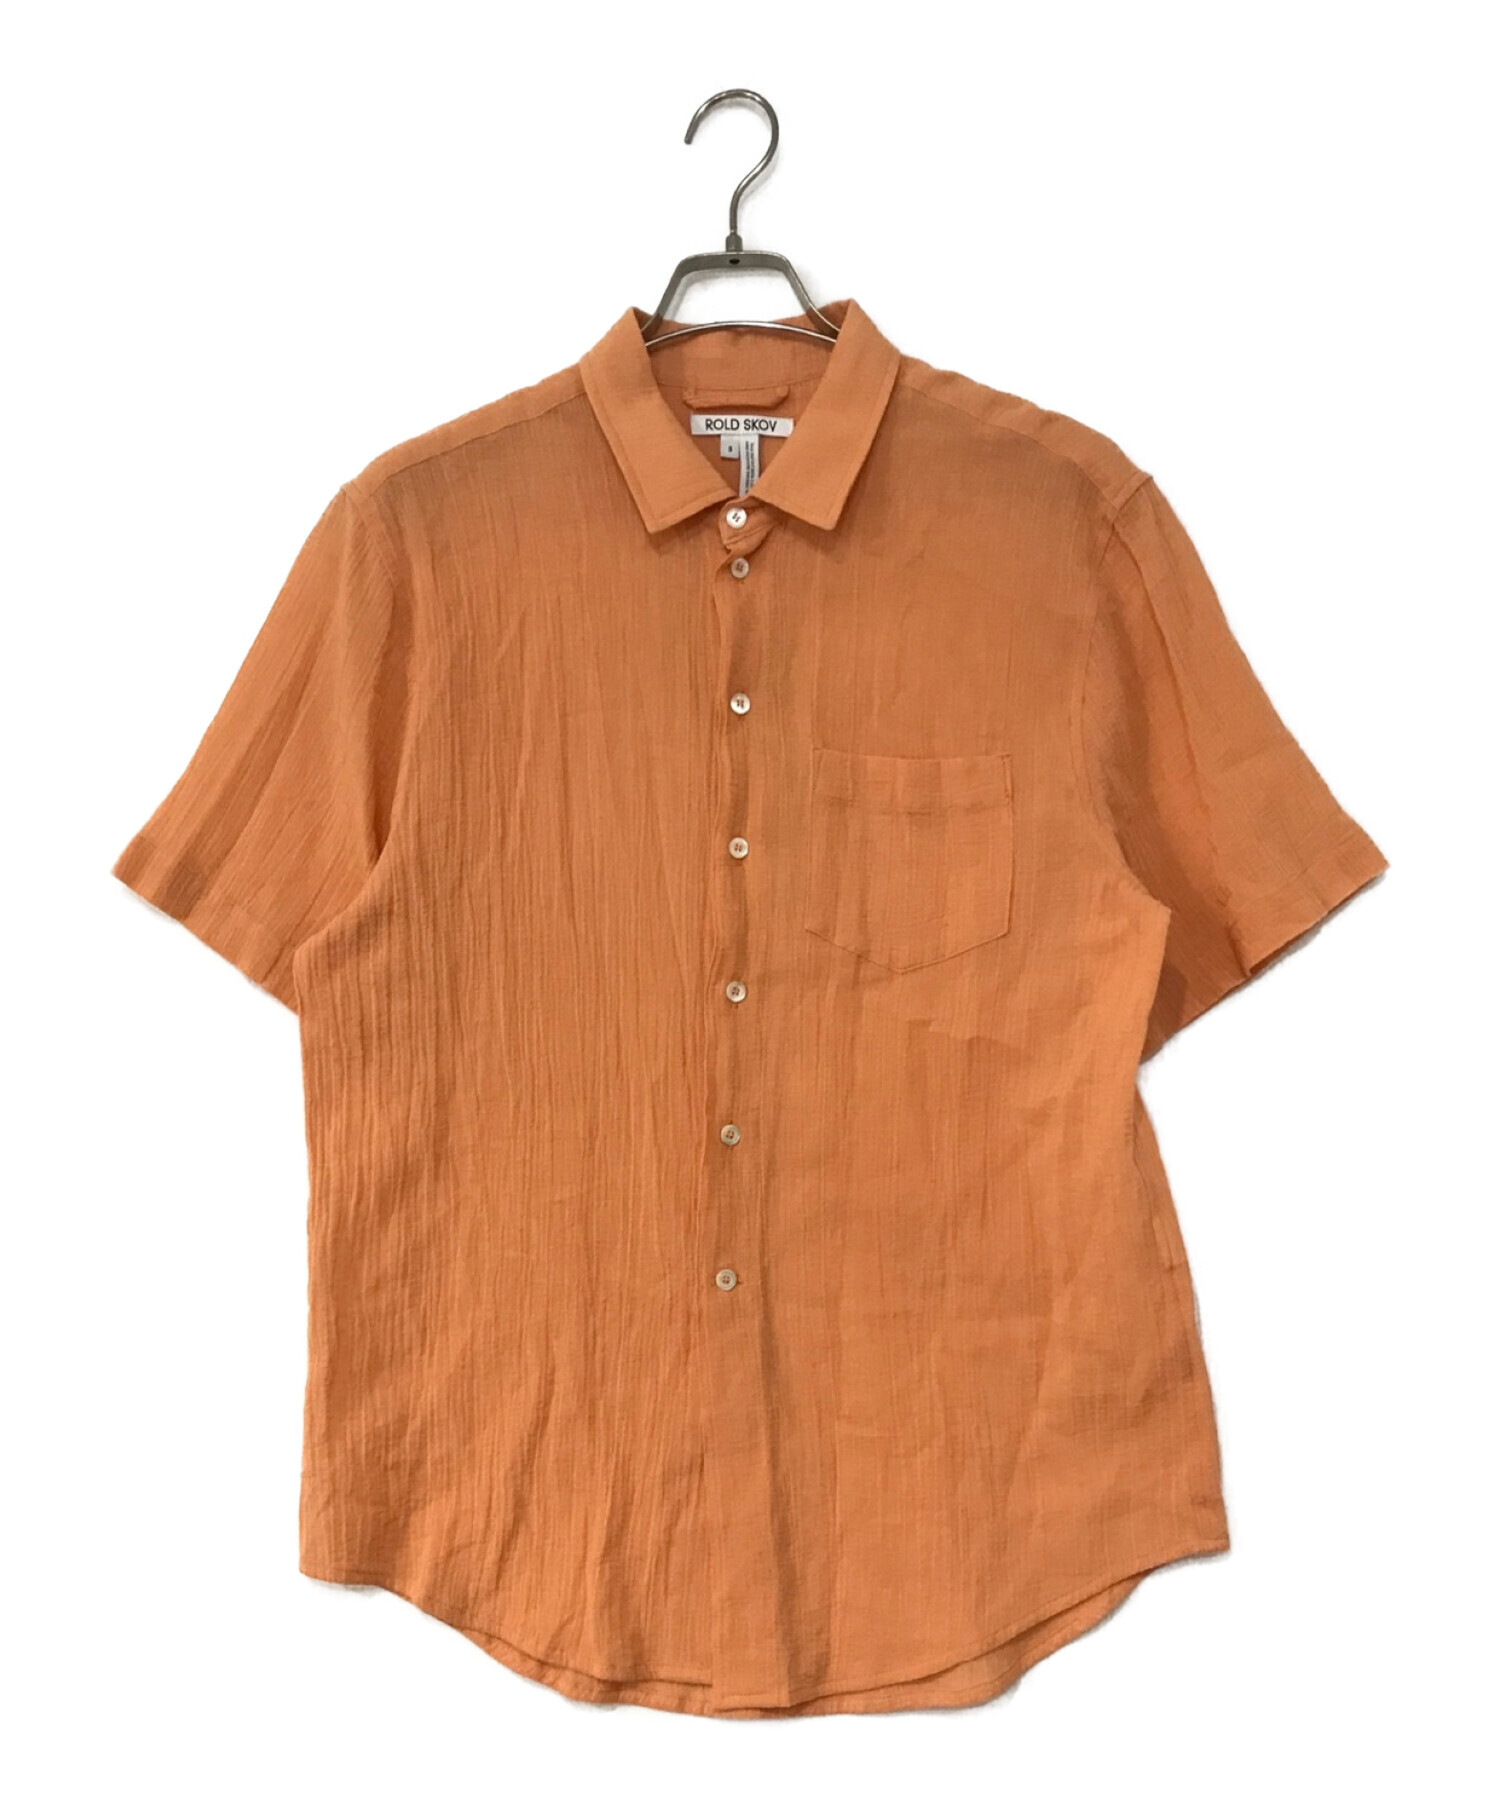 ページボーイ 半袖シャツ オレンジ - シャツ